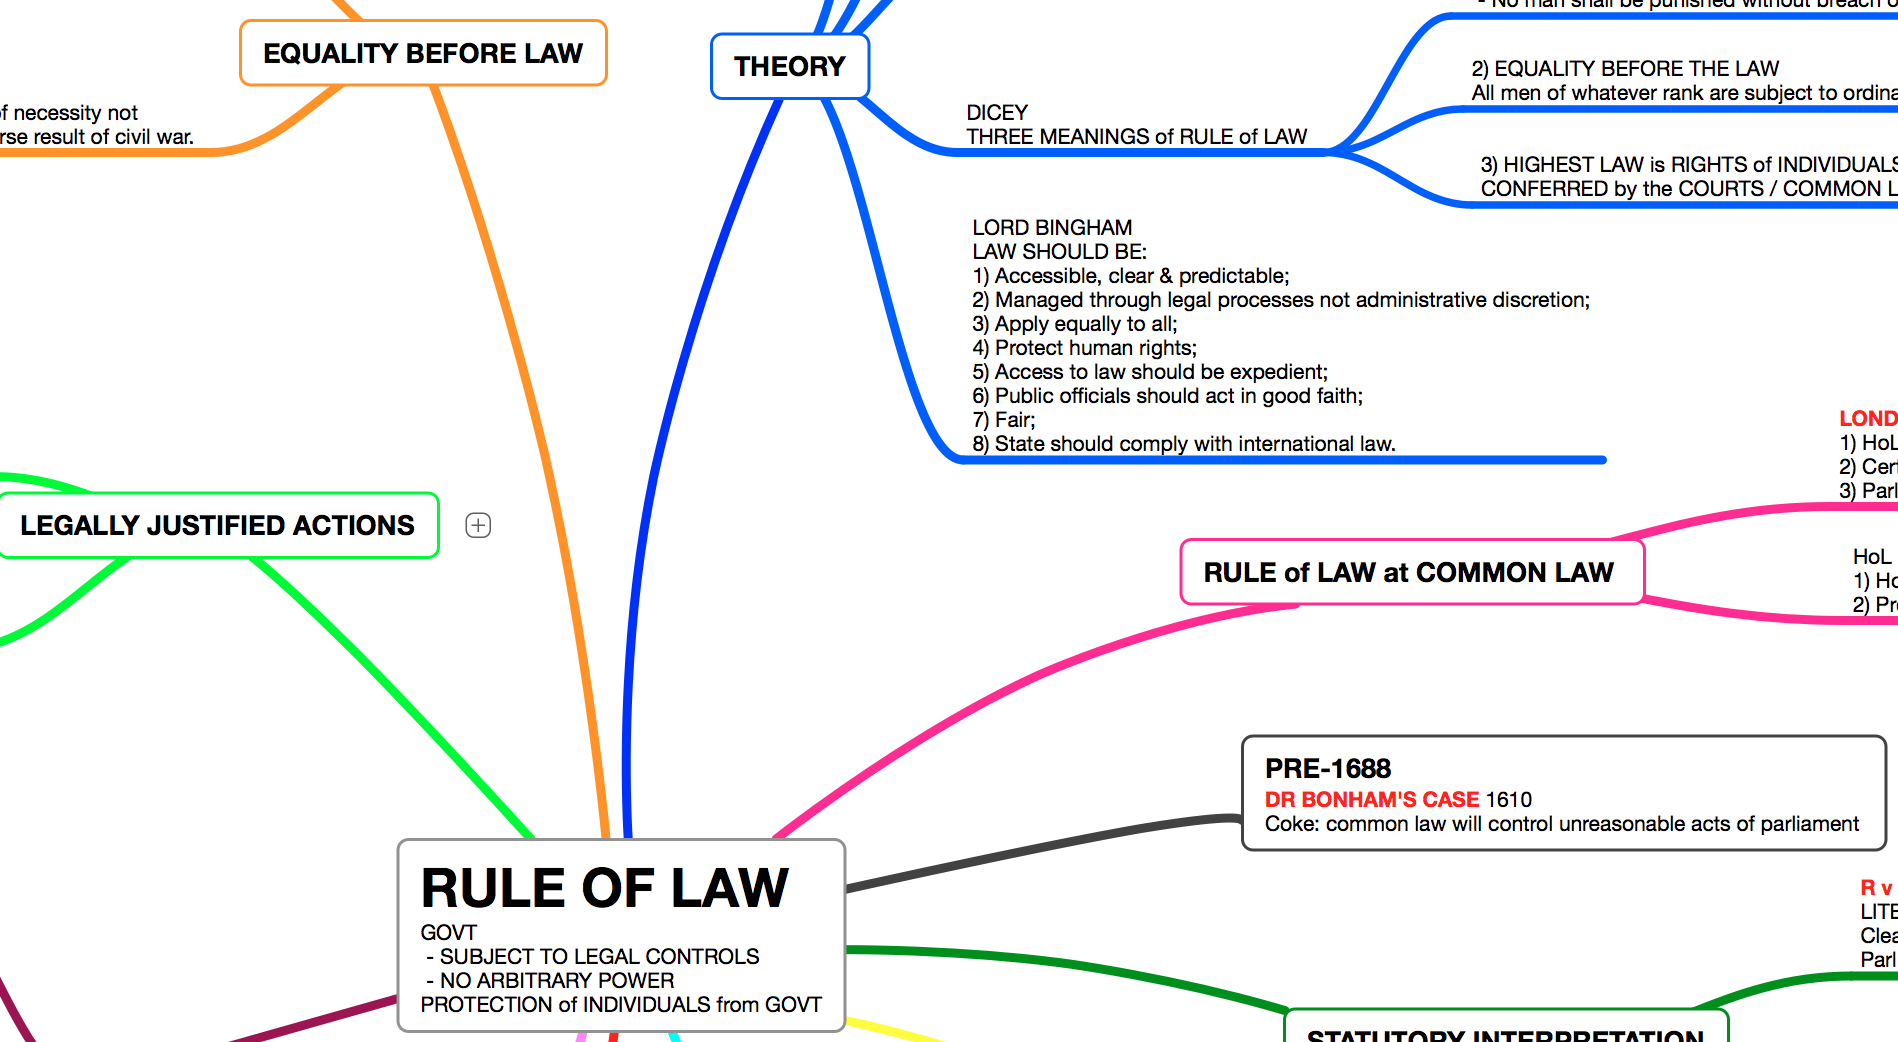 RULE OF LAW